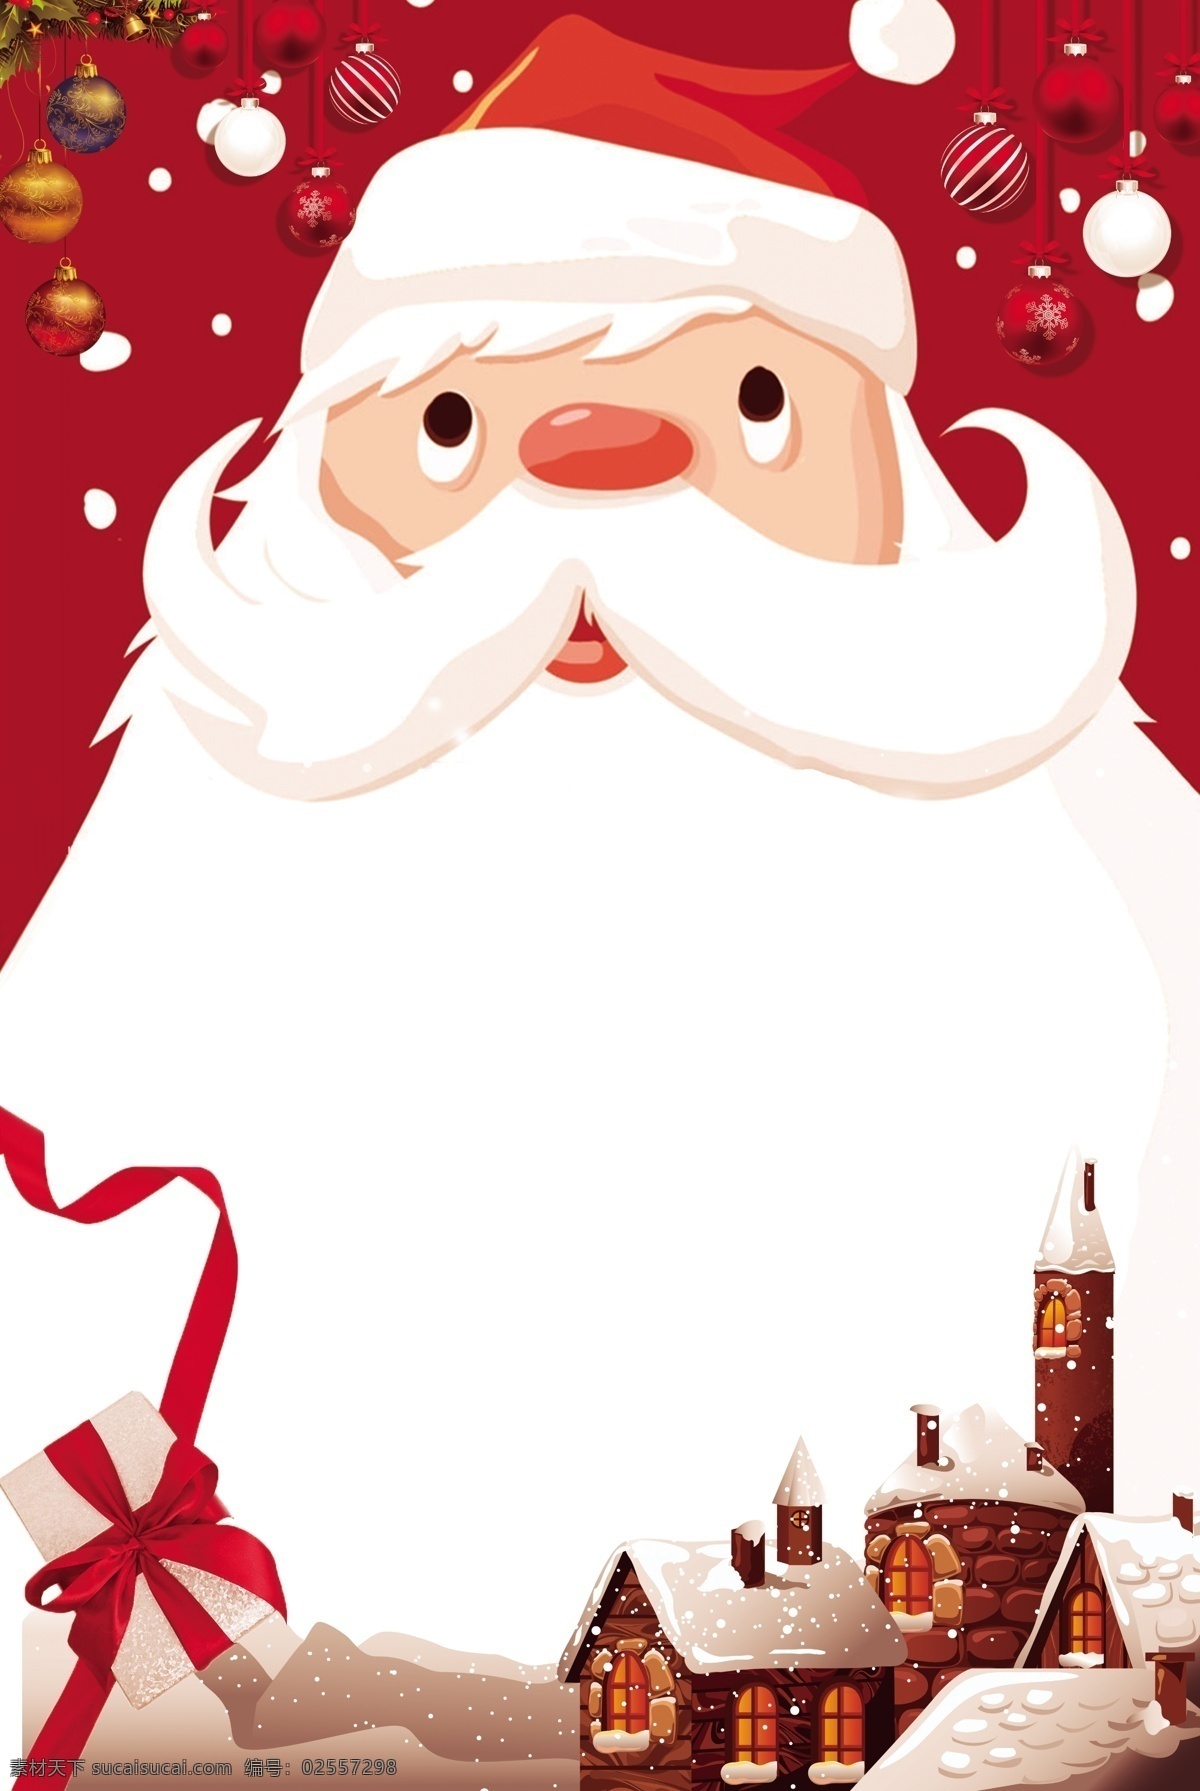 红色 手绘 卡通 圣诞节 背景 图 可爱 礼盒 雪花 圣诞老人 扁平 雪人 袜子 广告背景